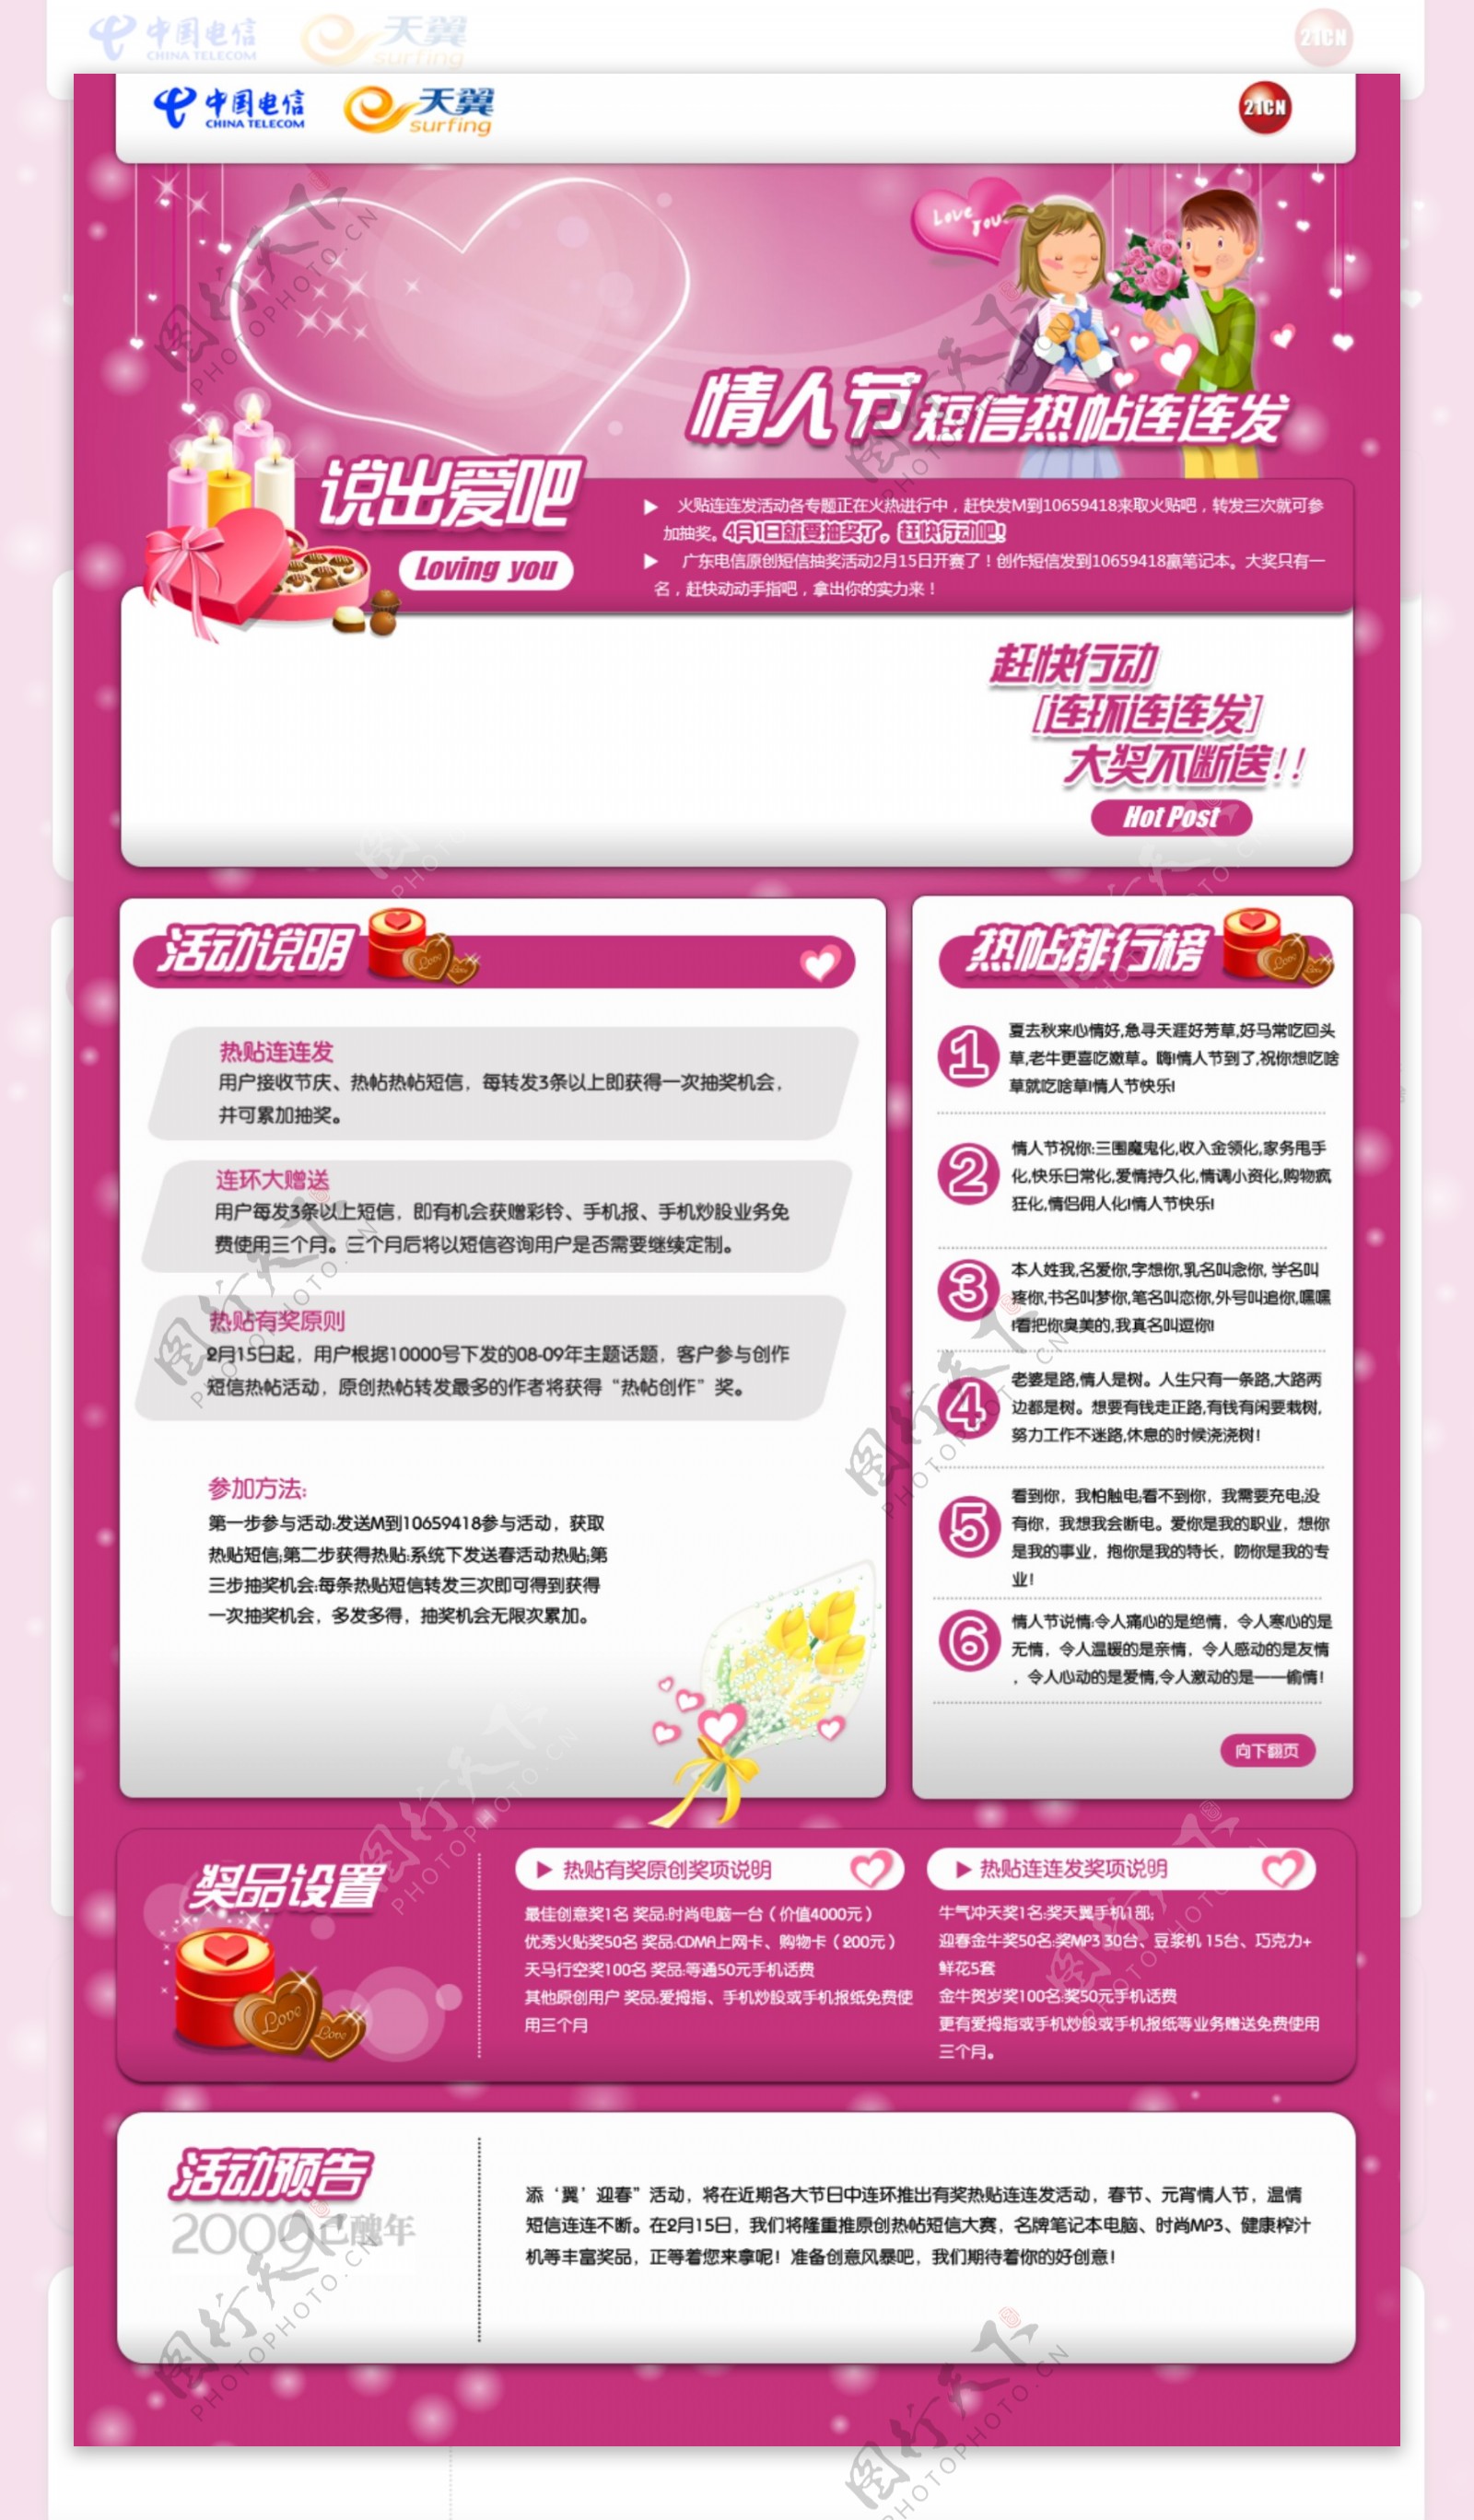 中国电信情人节活动页面模版设计图片